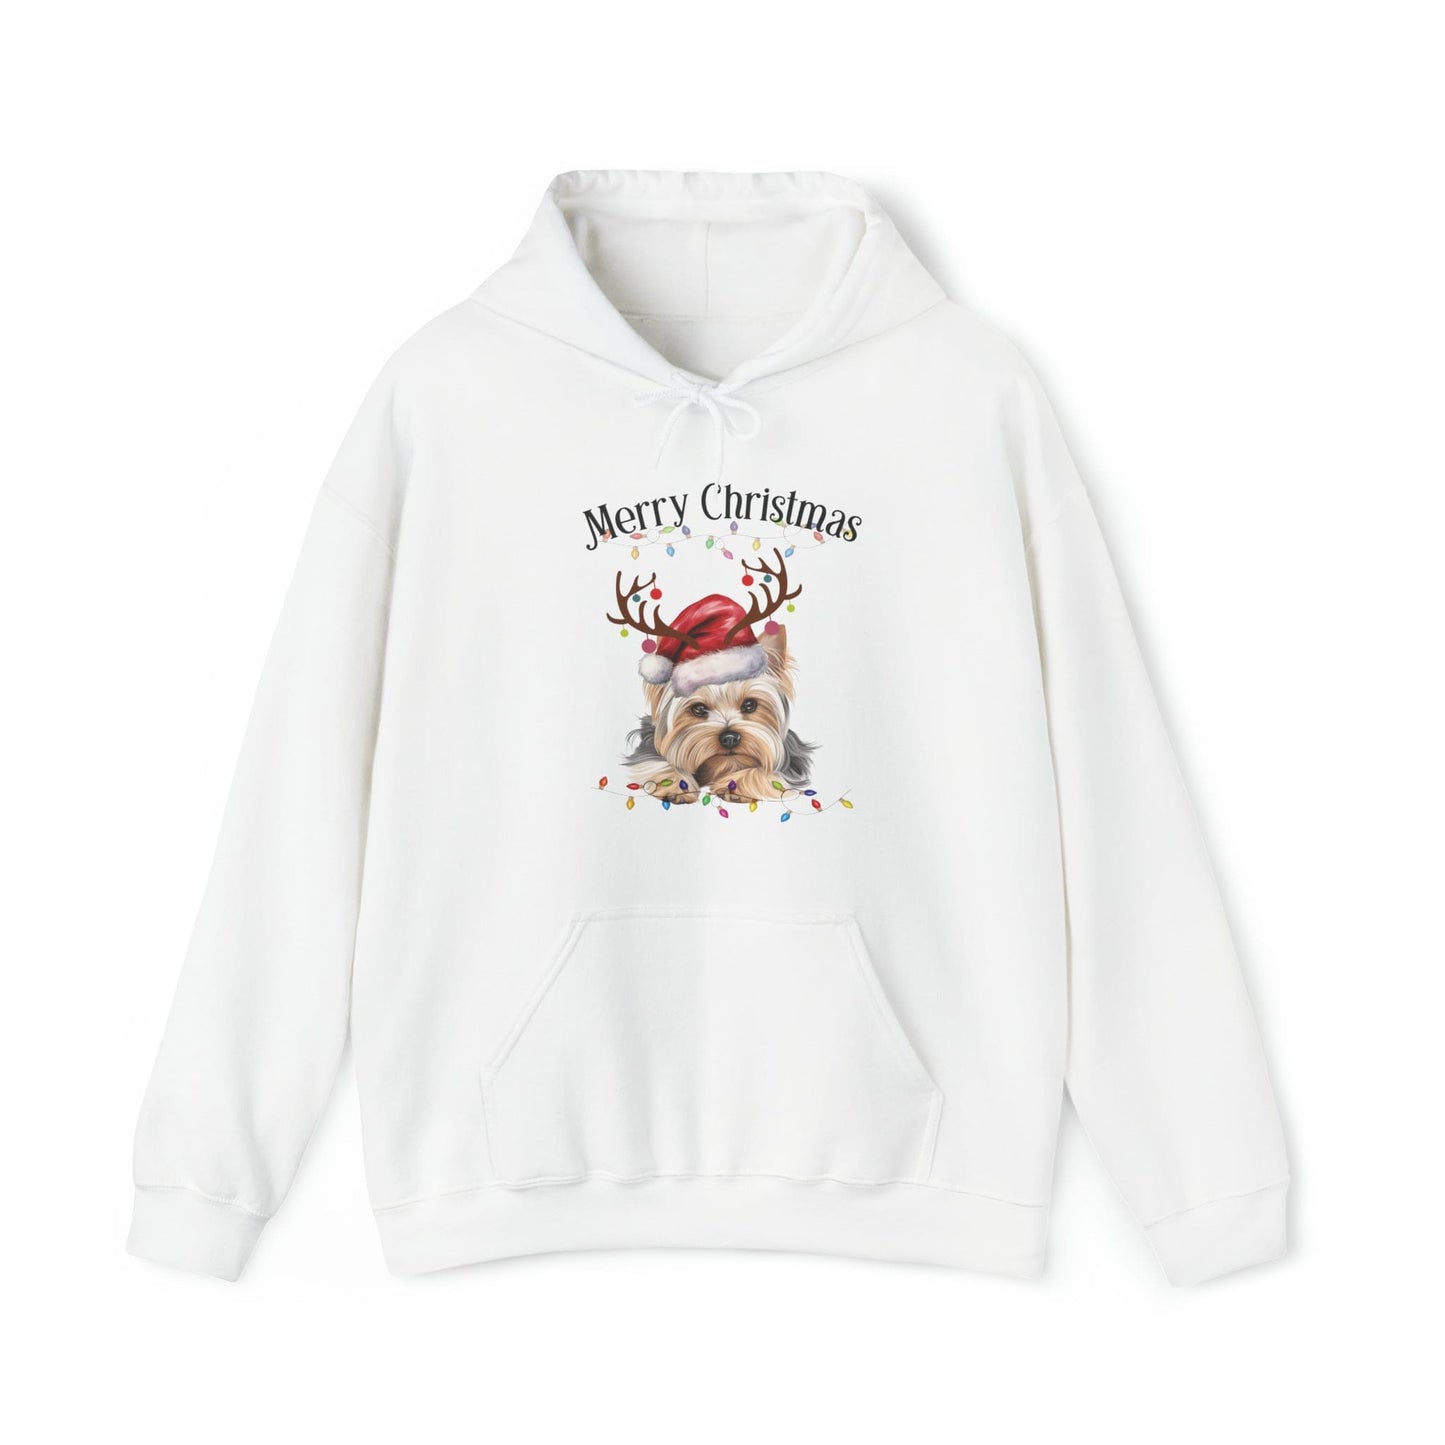 YorkShire Terrier Christmas Hoodie - Yorkie Sweatshirt ,Yorkie Lover Sweater,